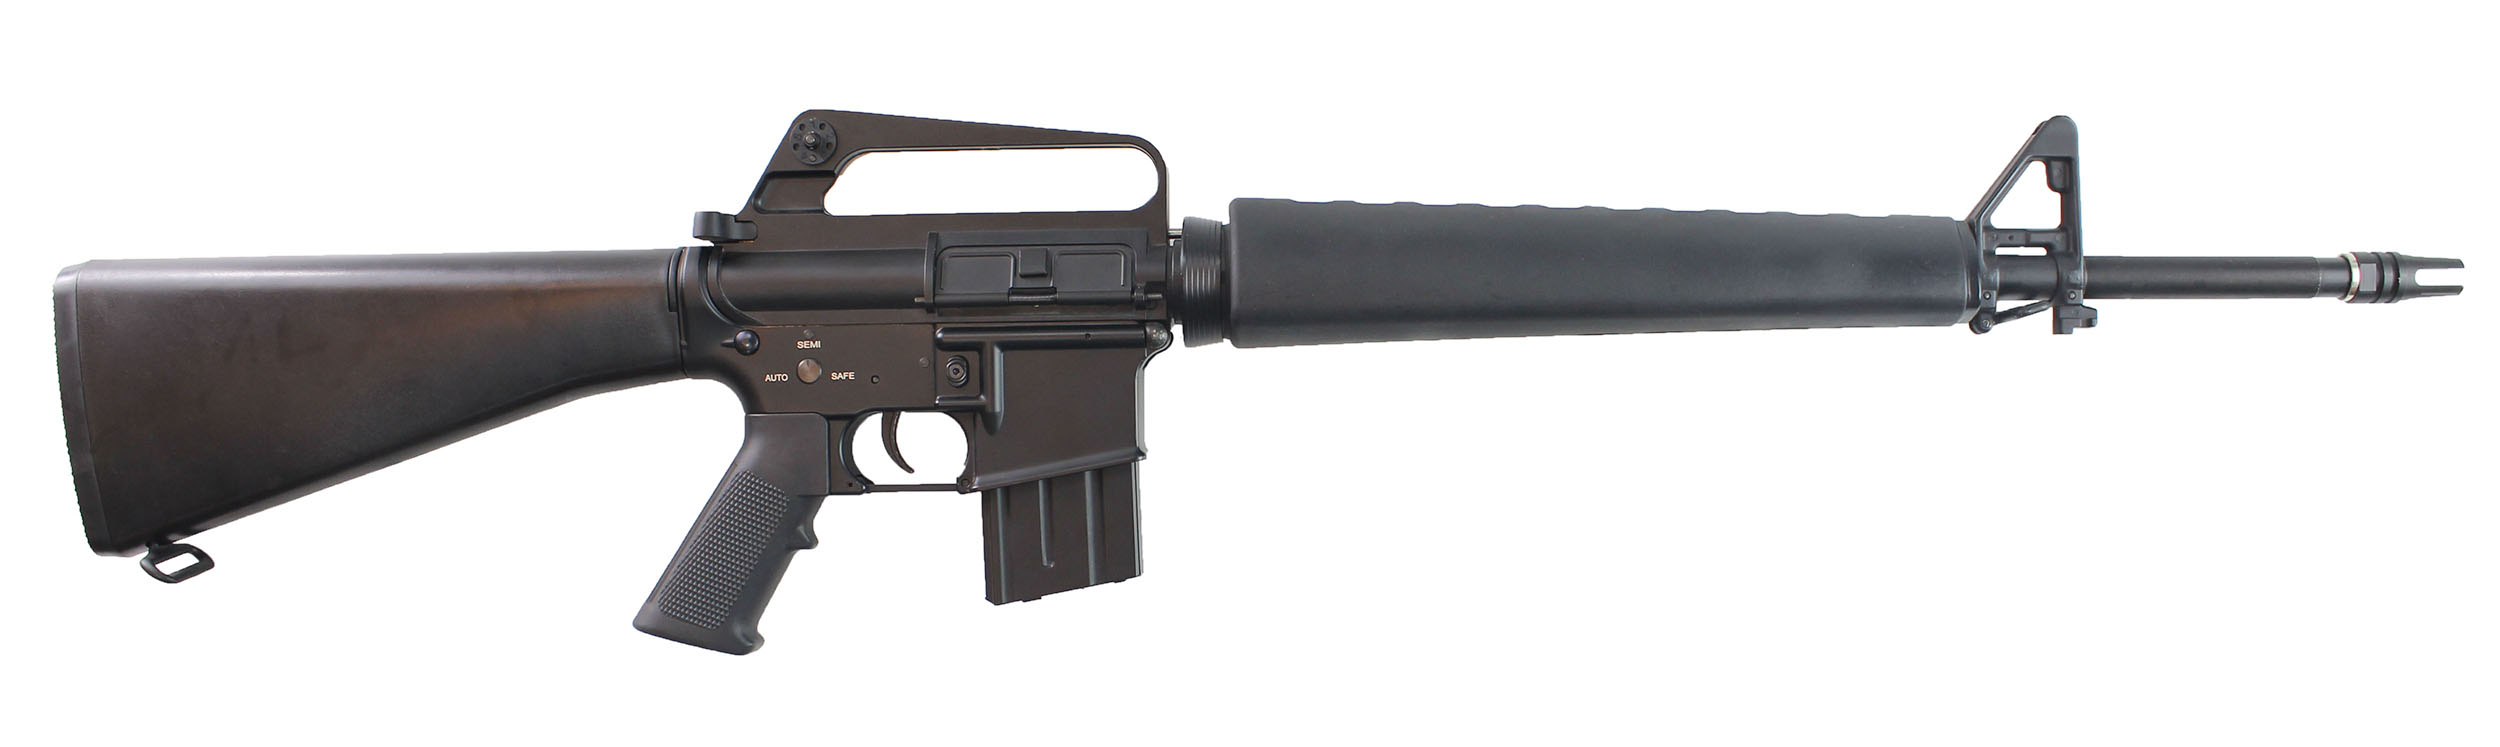 FUSIL D'ASSAUT M16 (Mitraillette - 68 cm) Réplique authentique